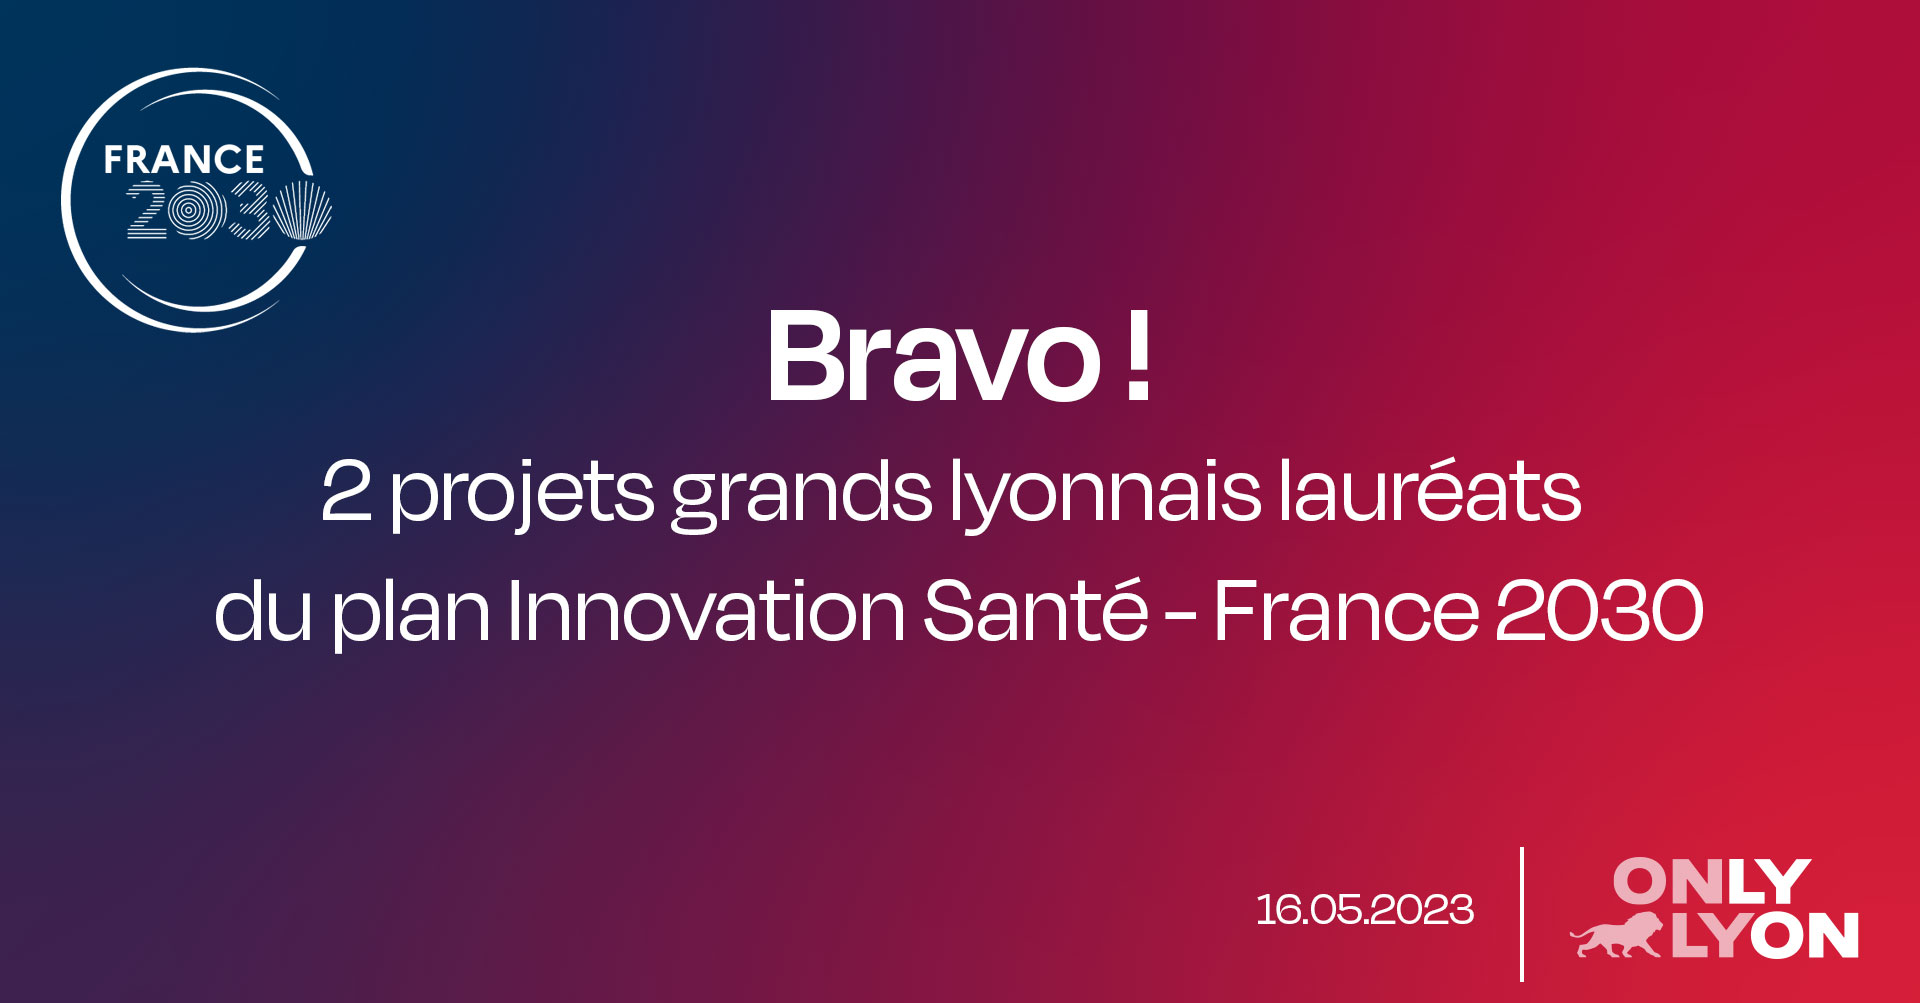 Bravo aux deux projets grands lyonnais labellisés par le gouvernement français le 16 mai 2023 et qui recevront les financements du plan Innovation Santé - France 2030